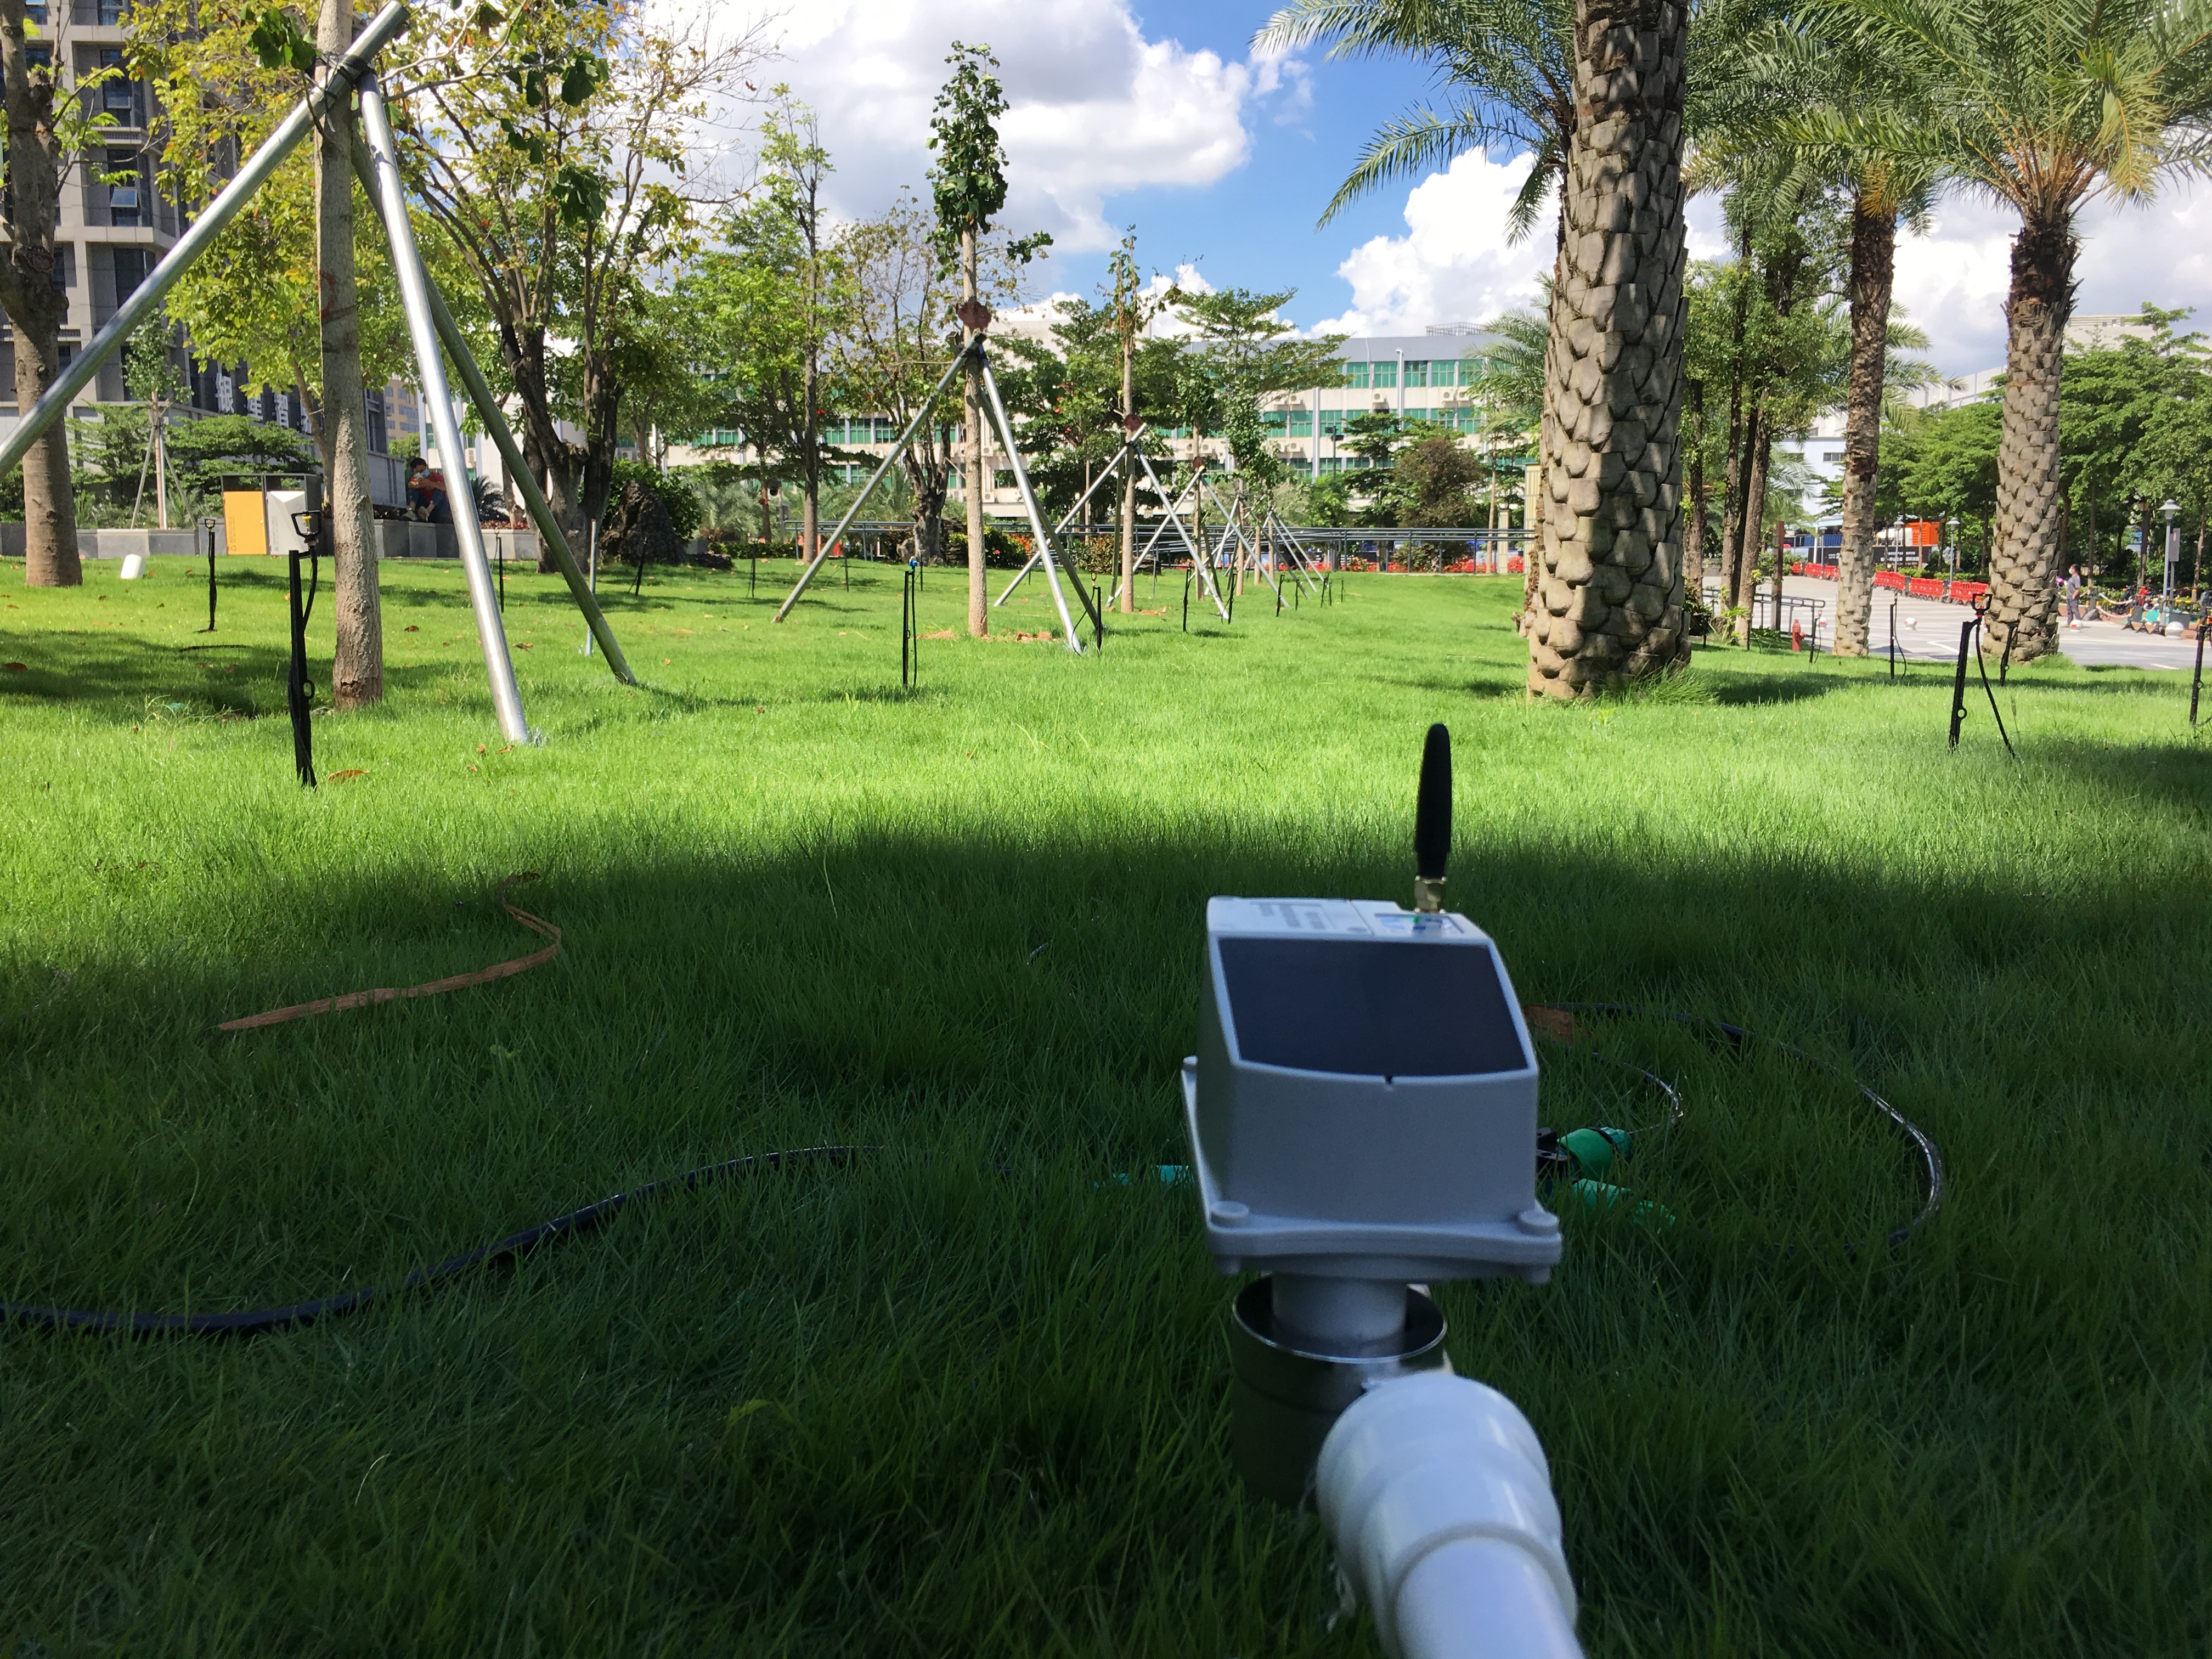 Temporizador de manguera de jardín inteligente controlado por GSM con servicios IoT totalmente gestionados